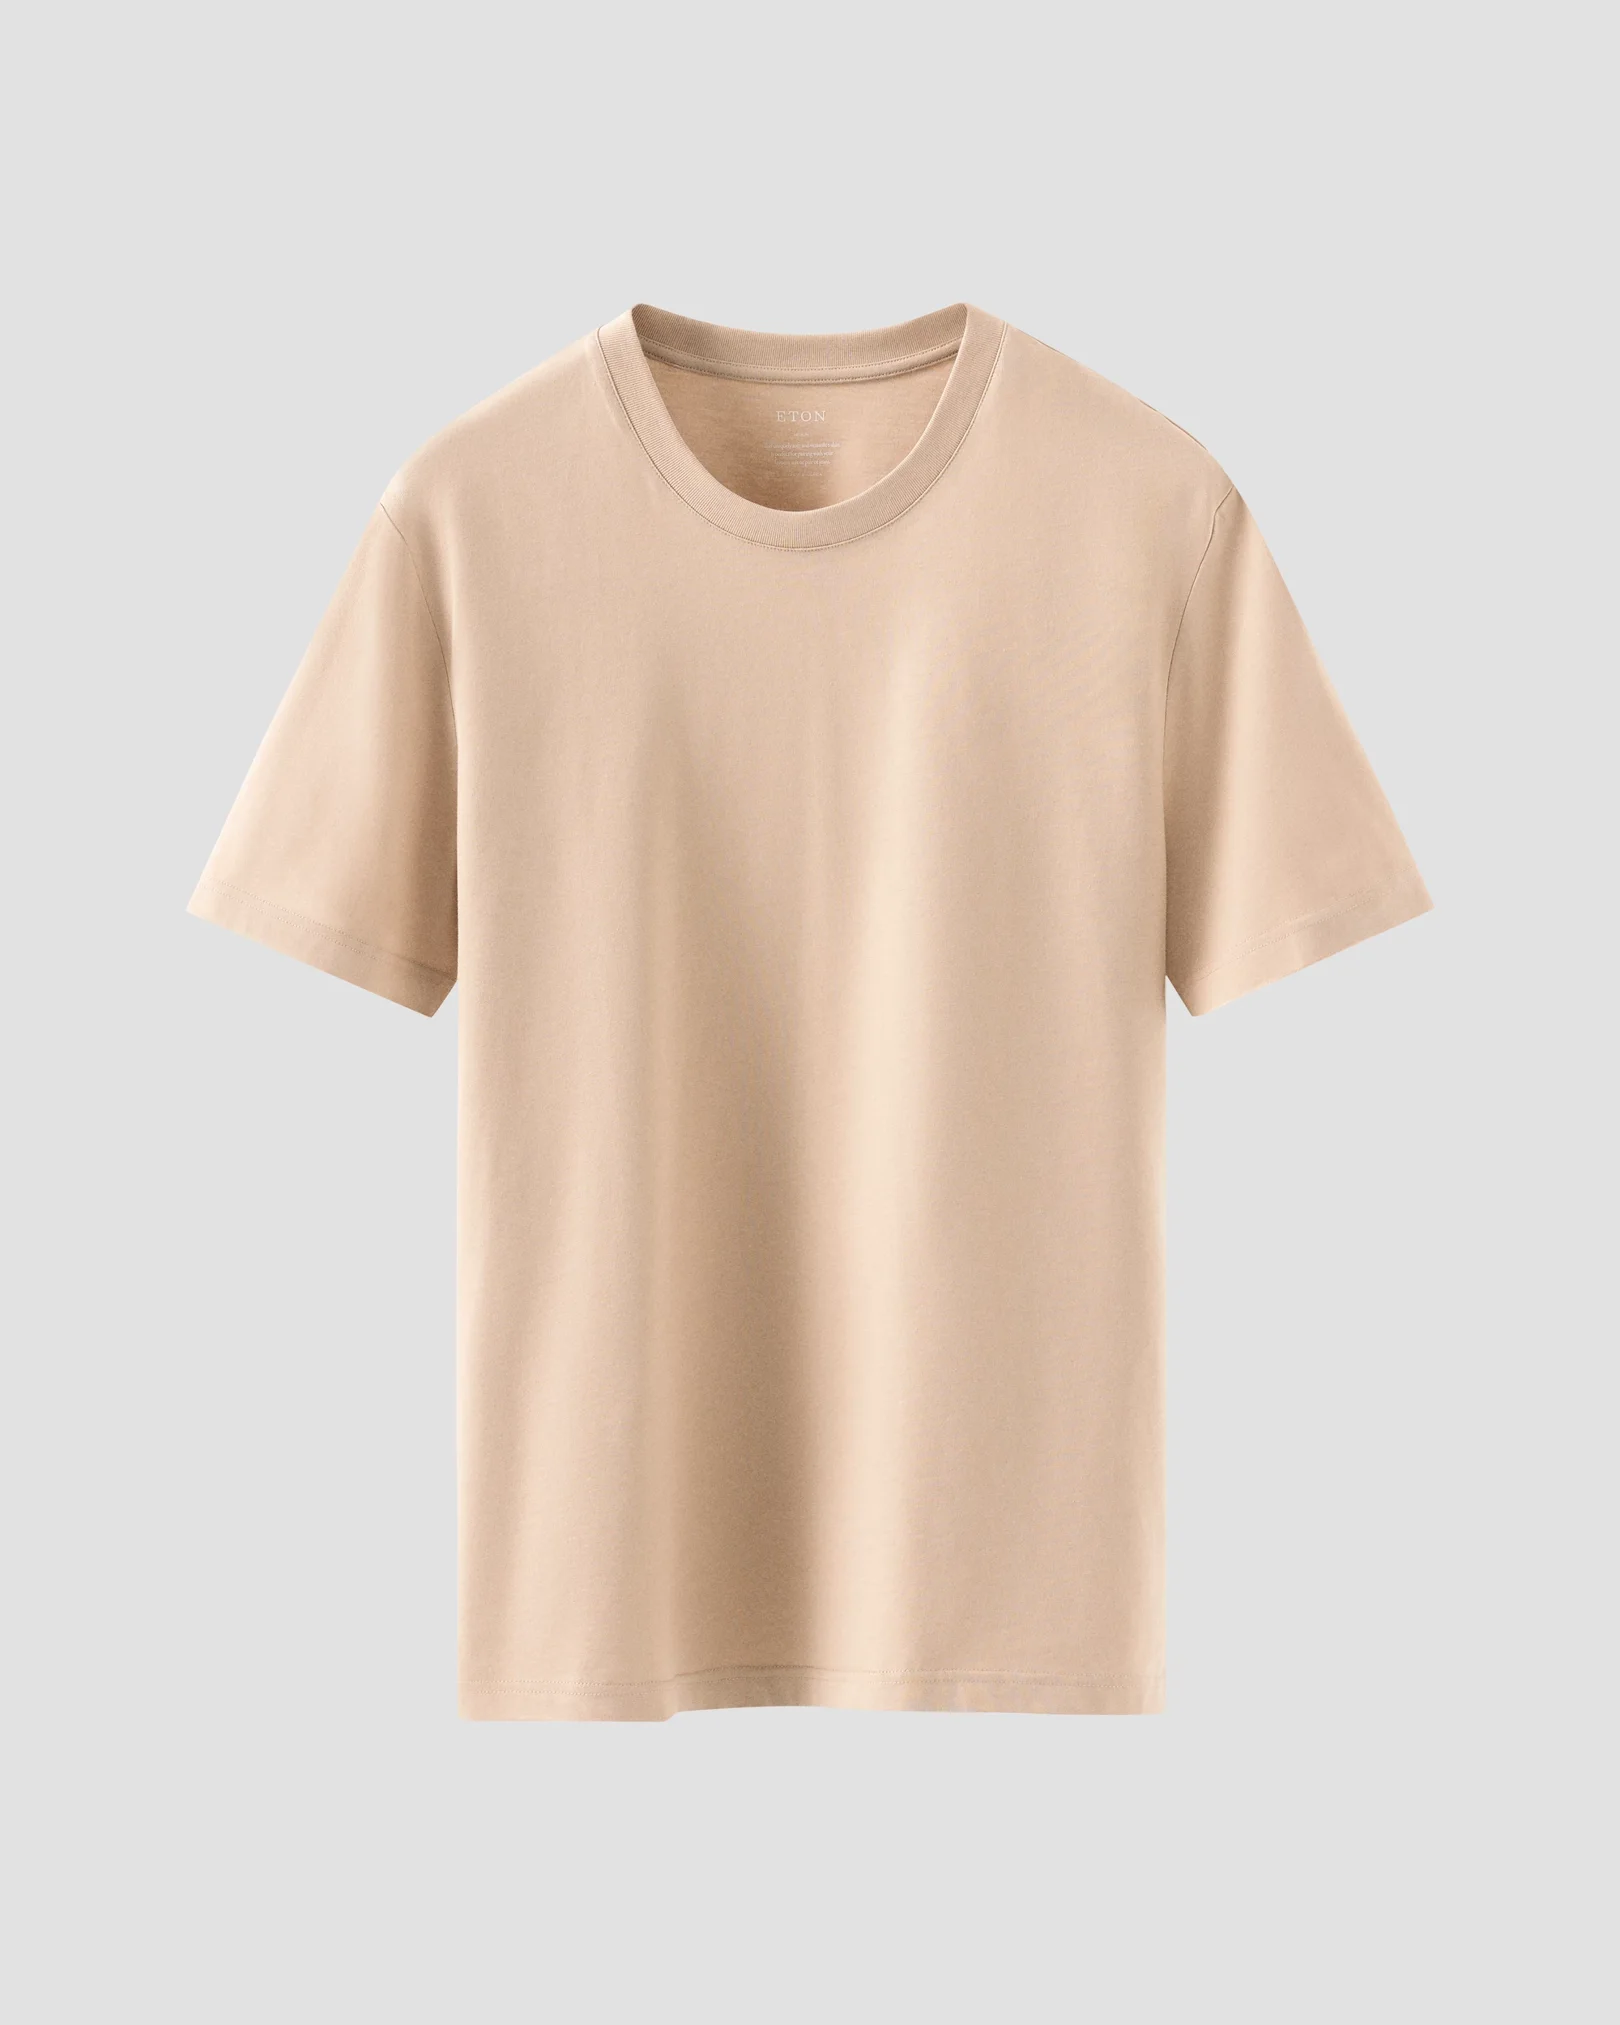 T-shirt marron clair en coton Supima